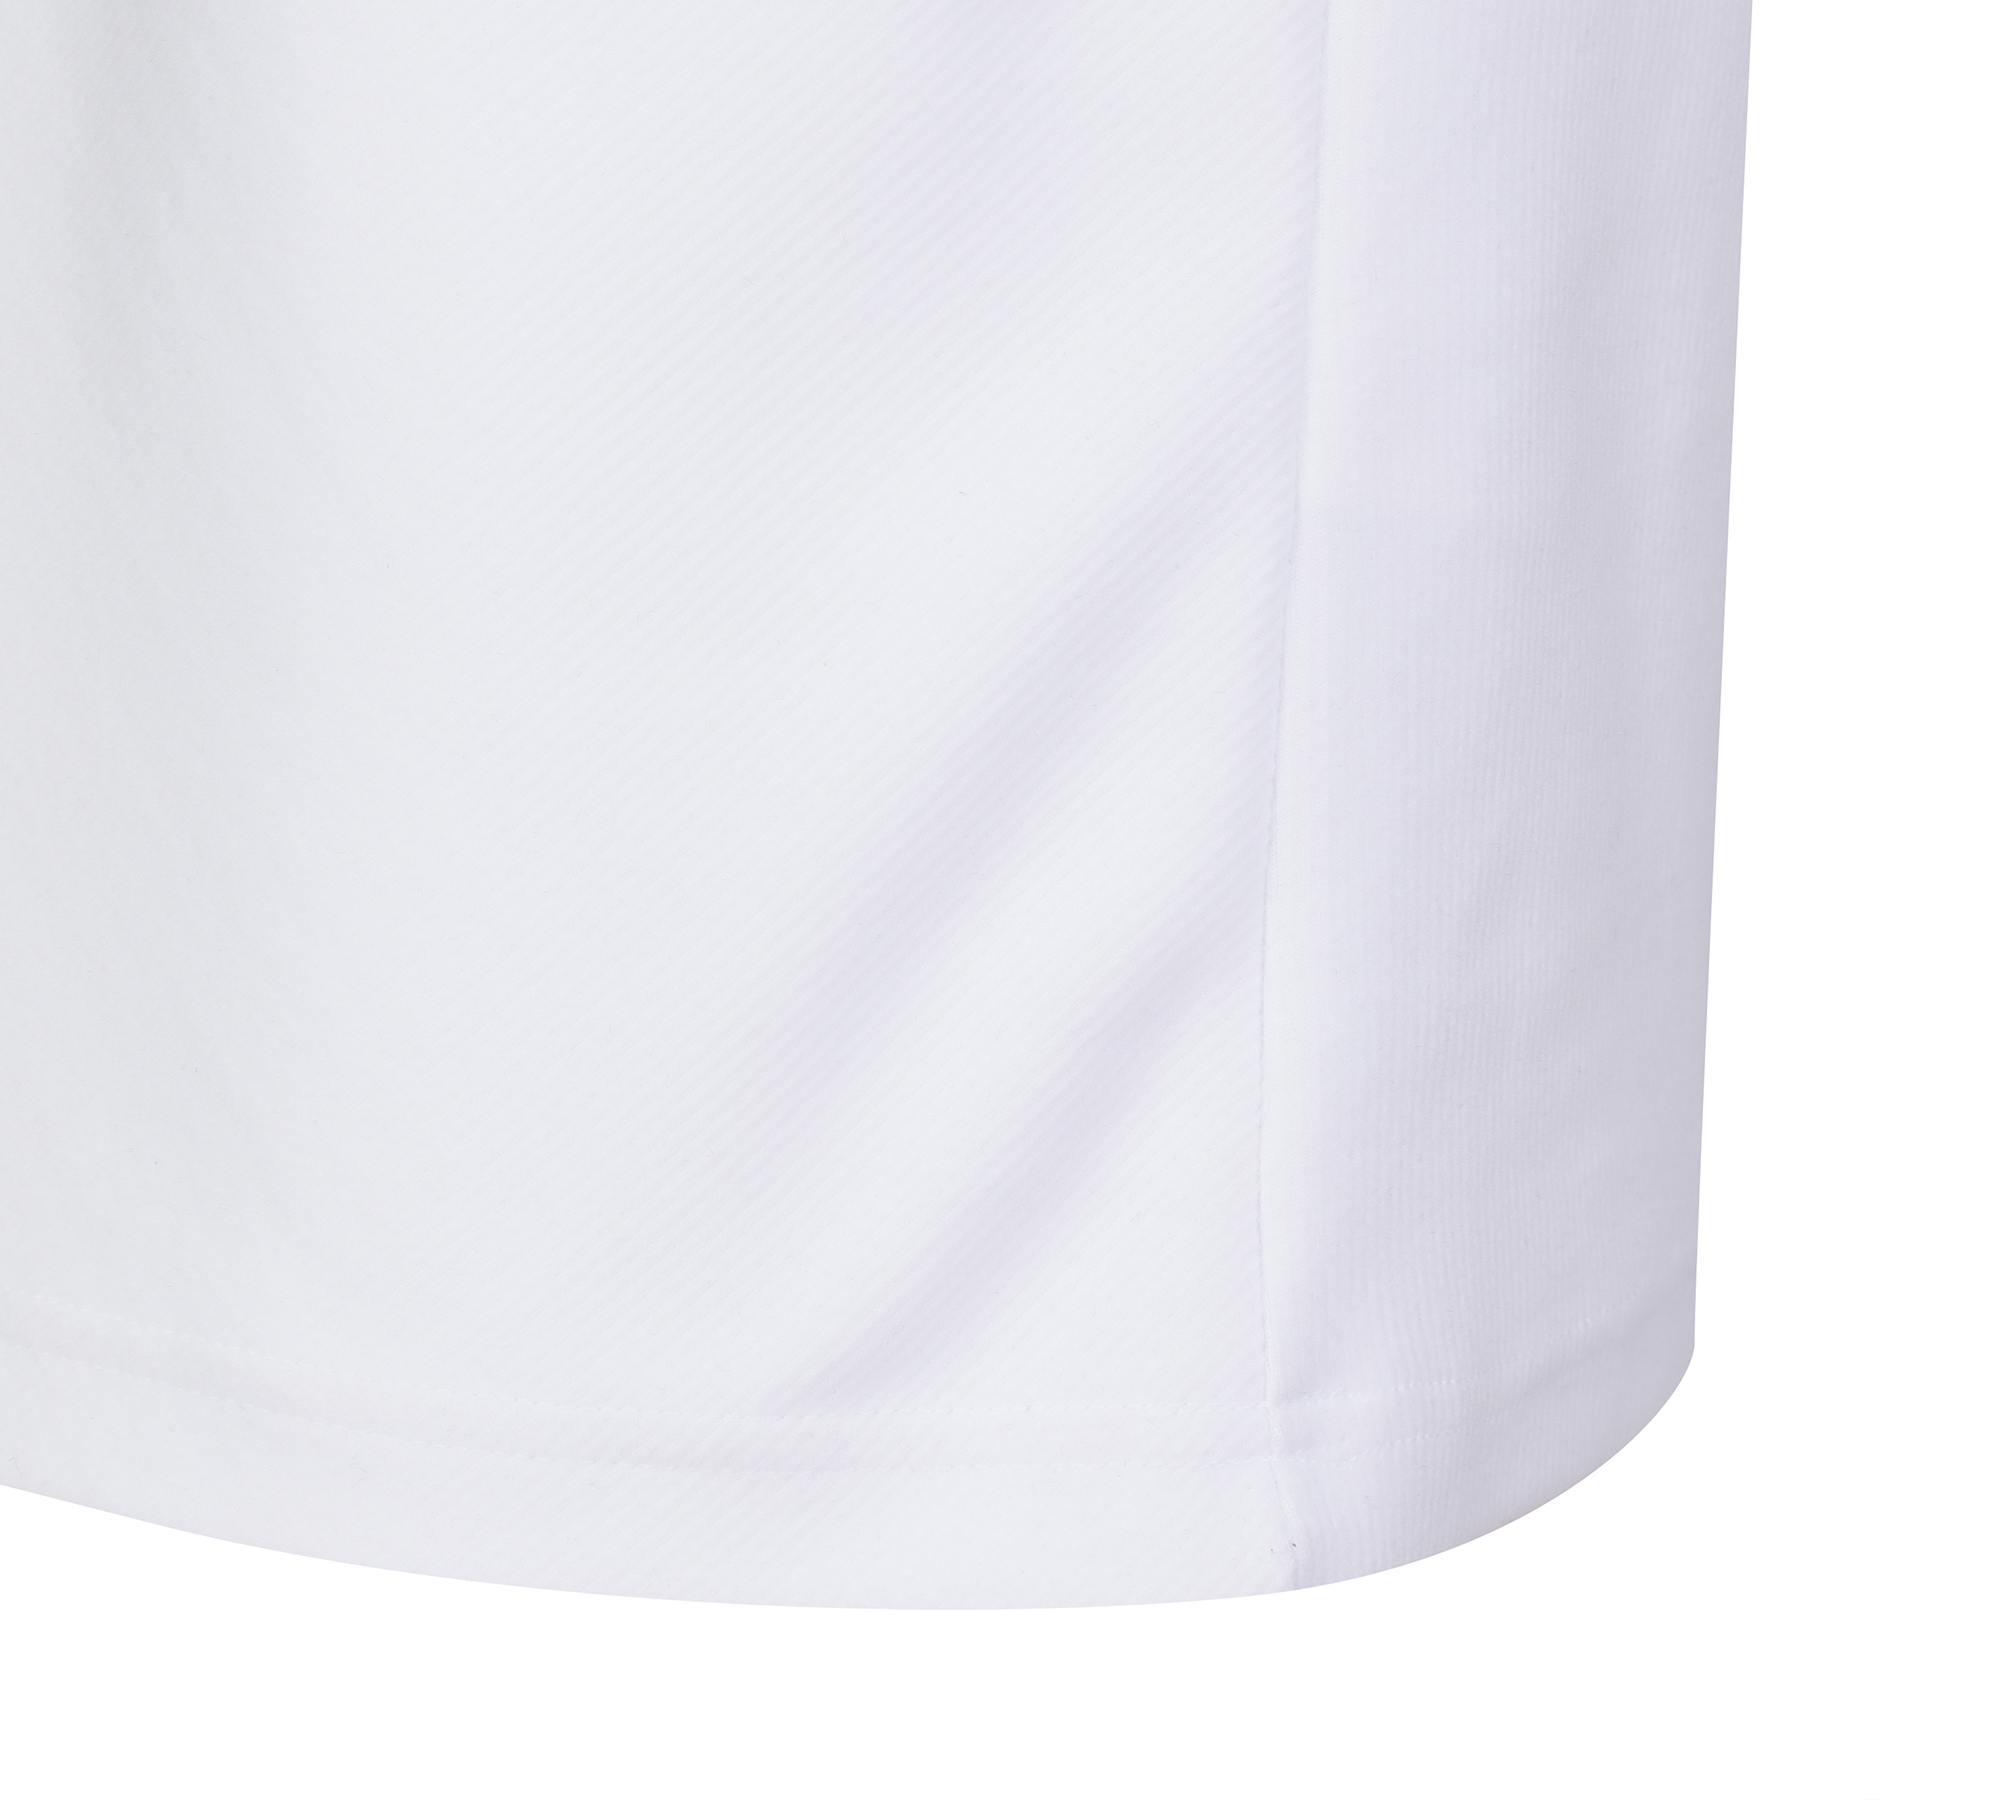 FG 라글란 소매 하이넥 티셔츠_52KA2602, 화이트